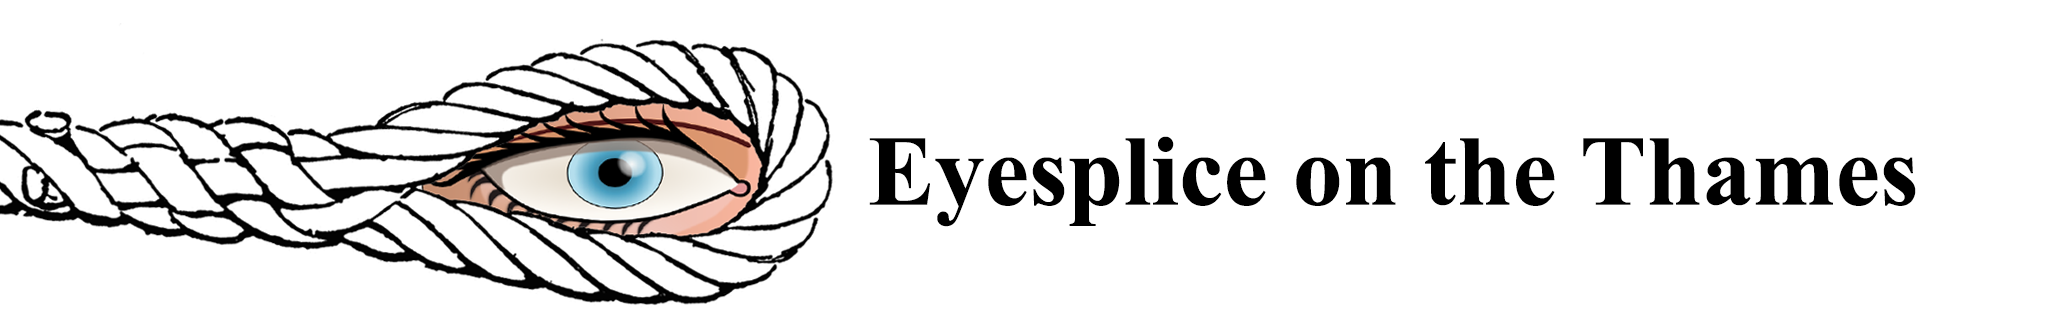 Eyesplice